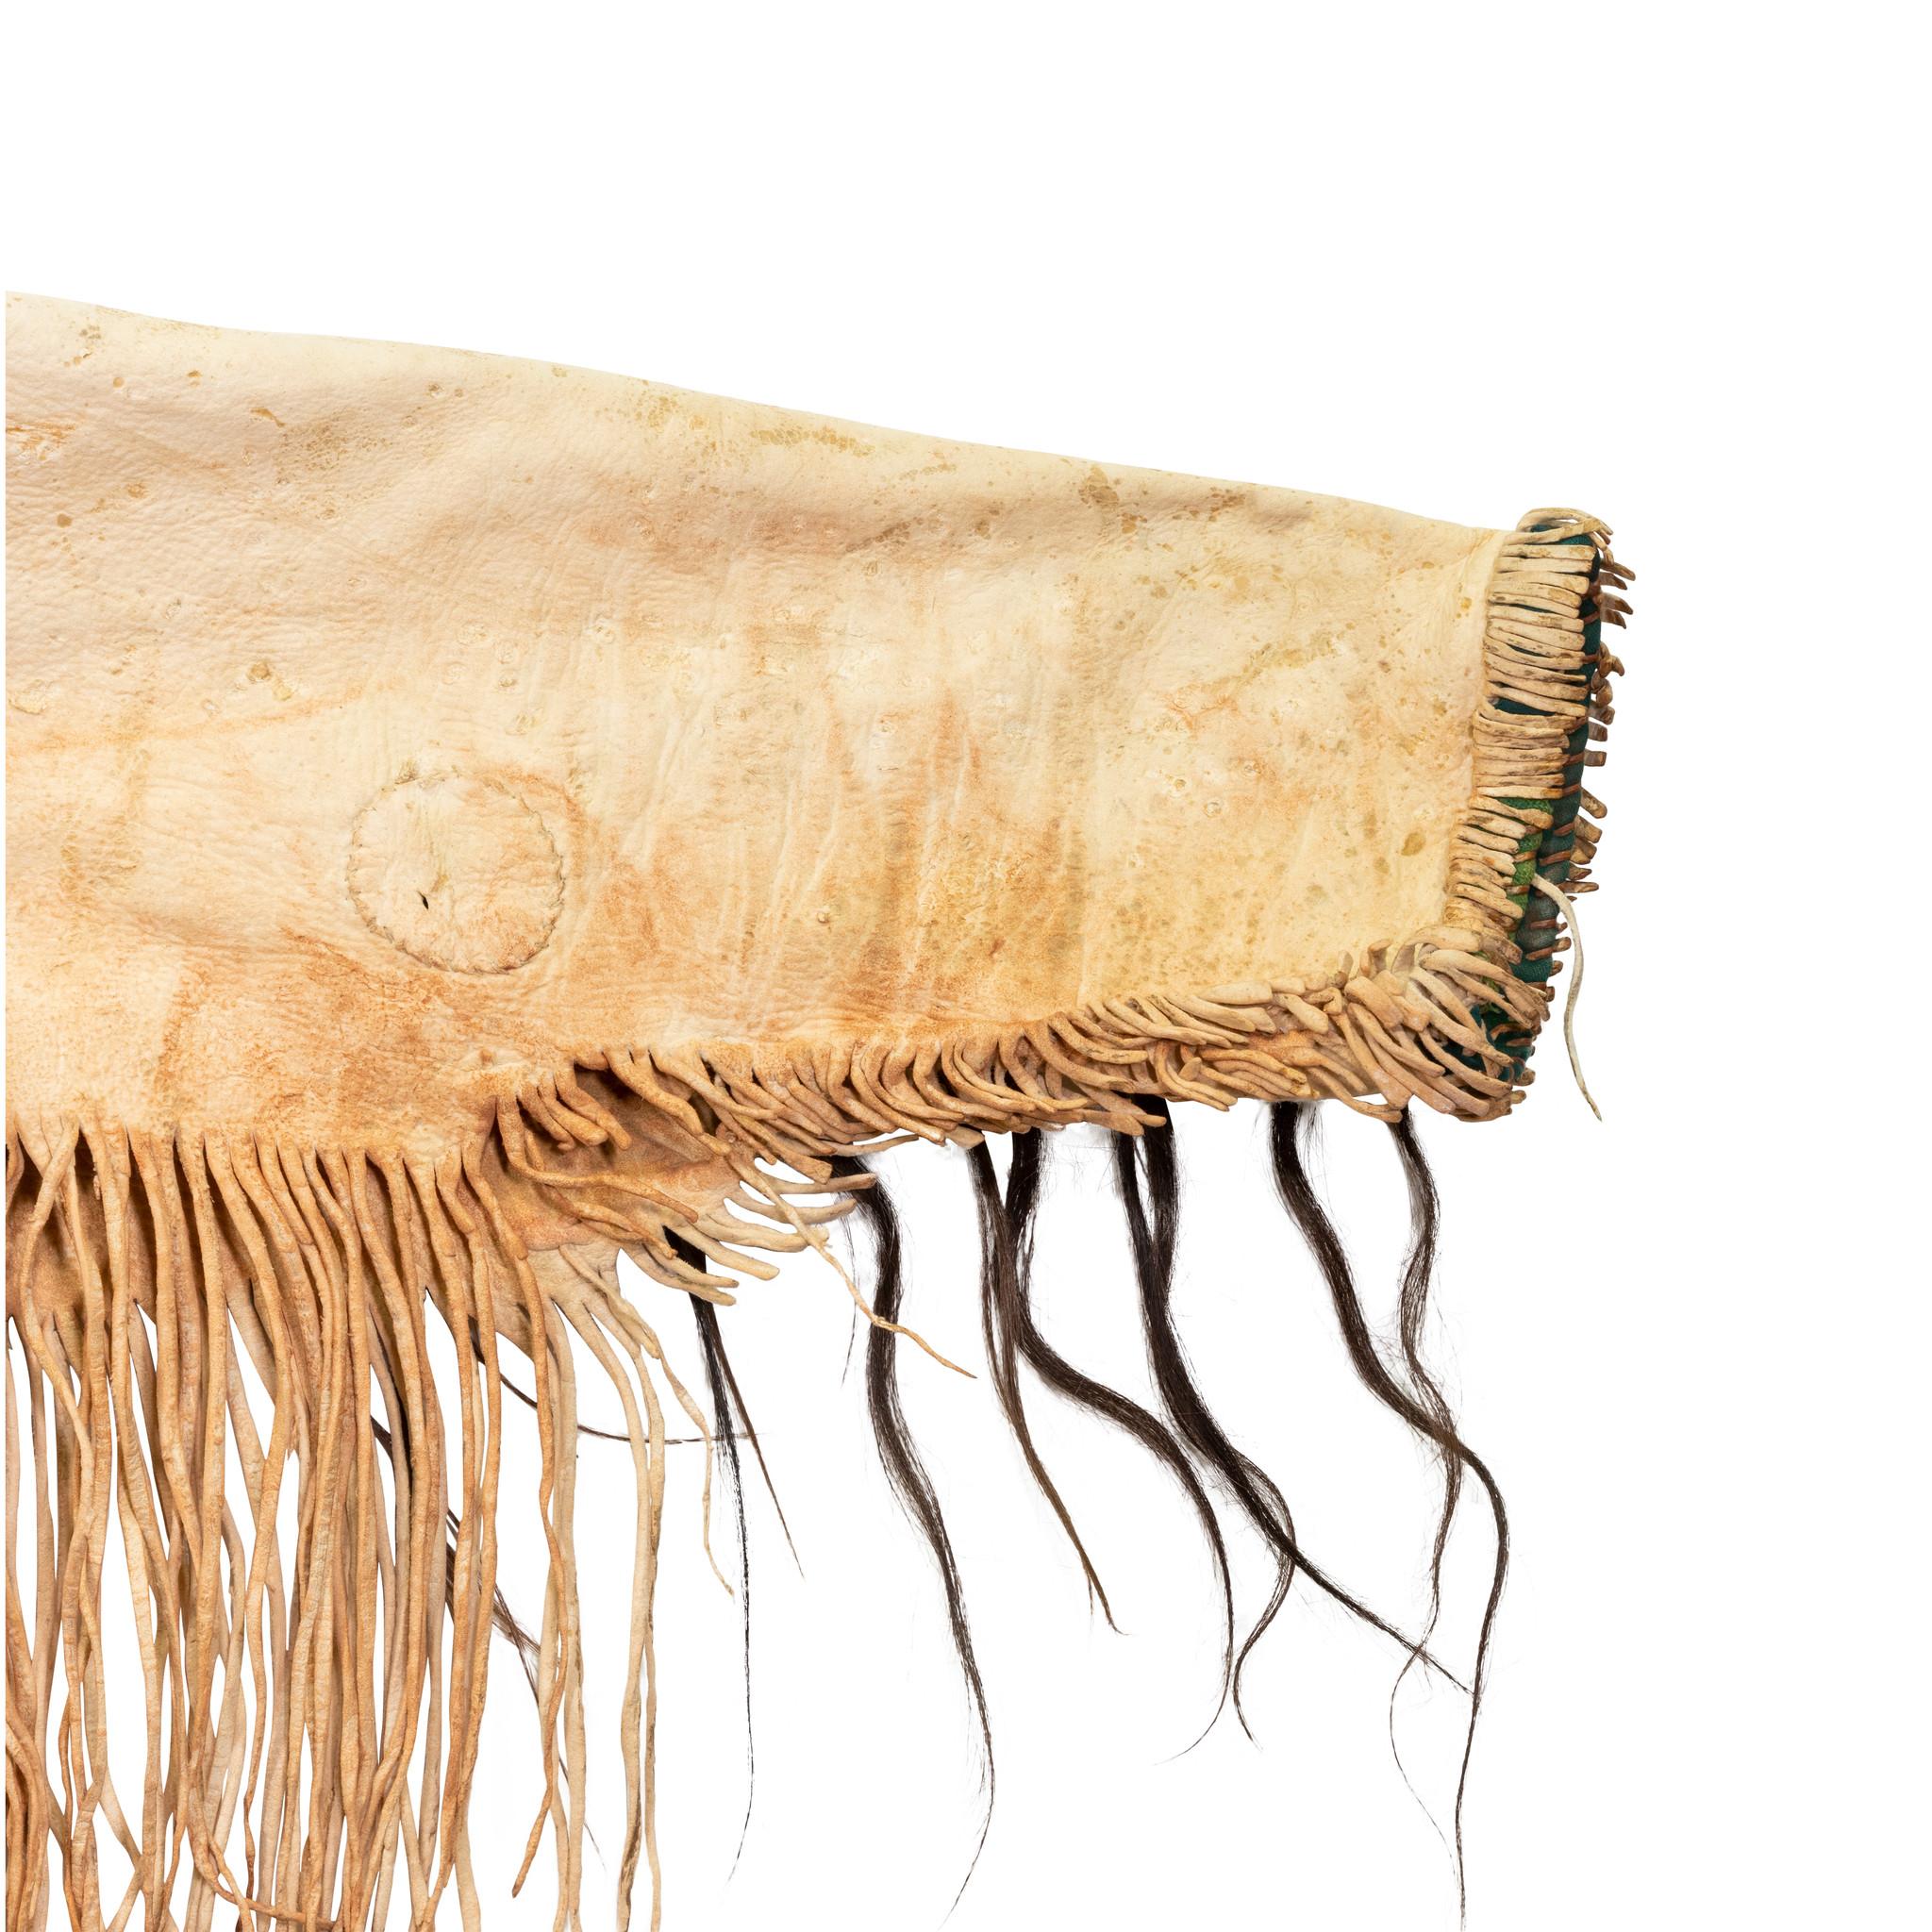 Chemise de guerre sioux du 19e siècle représentant un bison tanné à la cervelle et des mèches de cheveux enveloppées de plumes d'ocre rouge. Les bandes de perles sont ornées de têtes de bison stylisées, de pipes et de tipis. Belle patine d'usage à